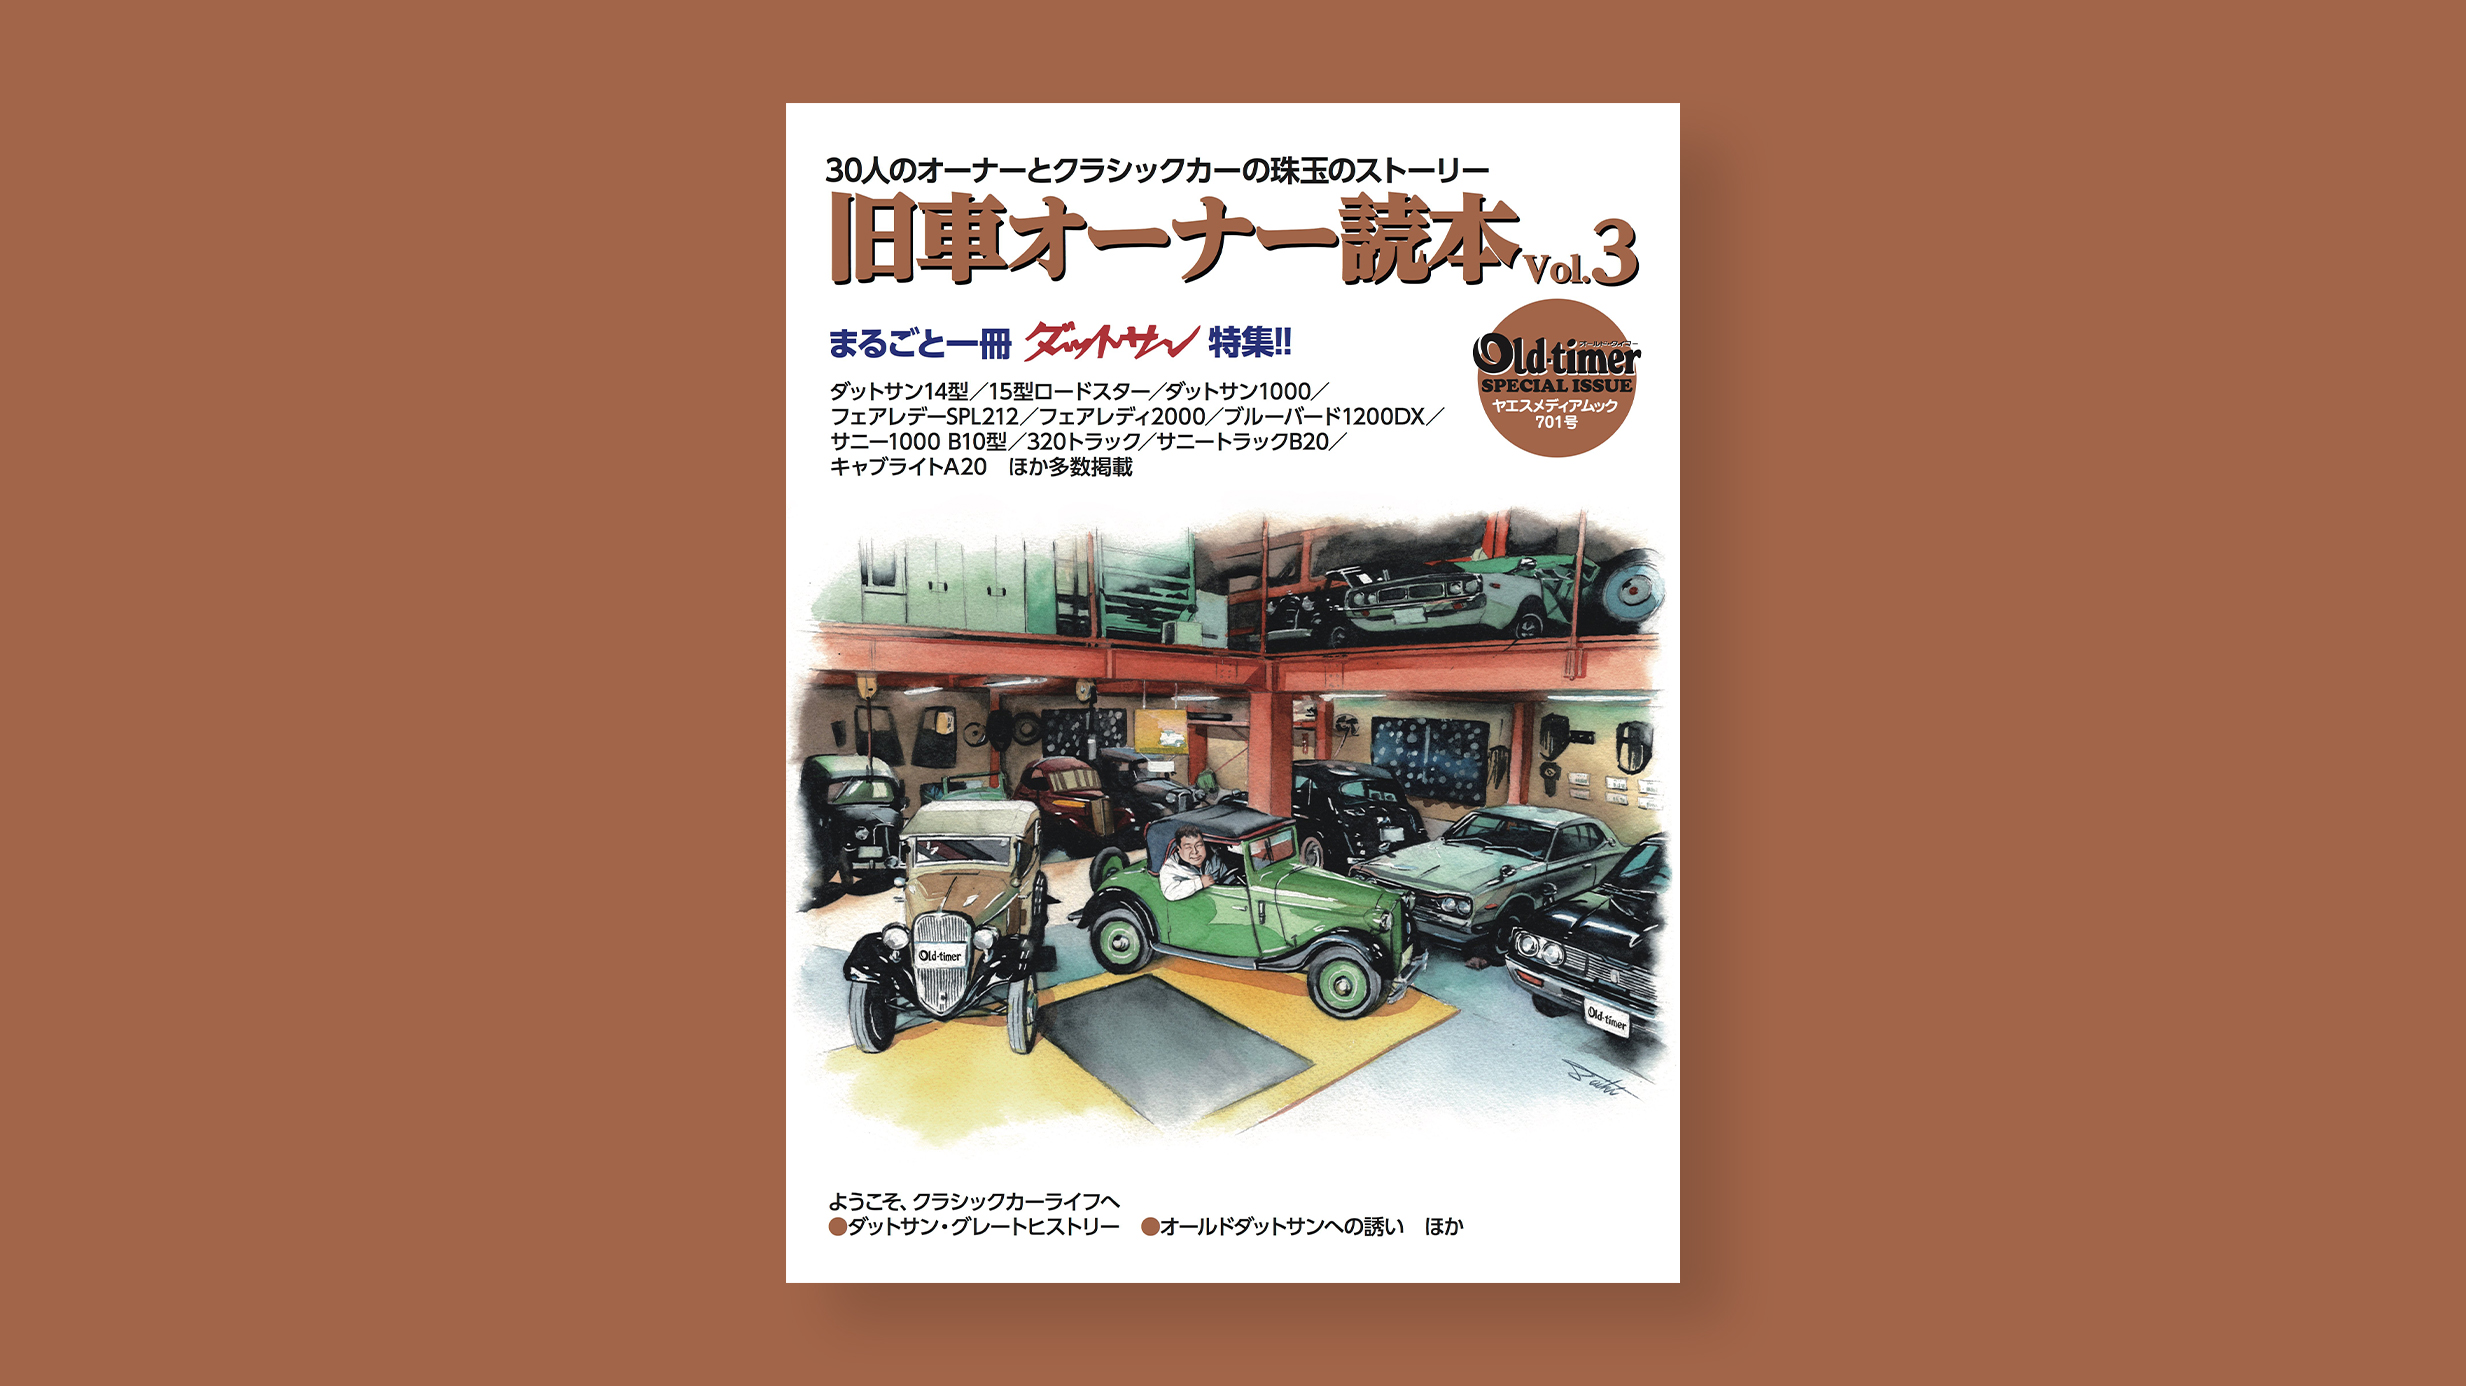 旧車オーナー読本 vol.3 (old-timer ヤエスメディアムック701号) 表紙車イラスト 装画